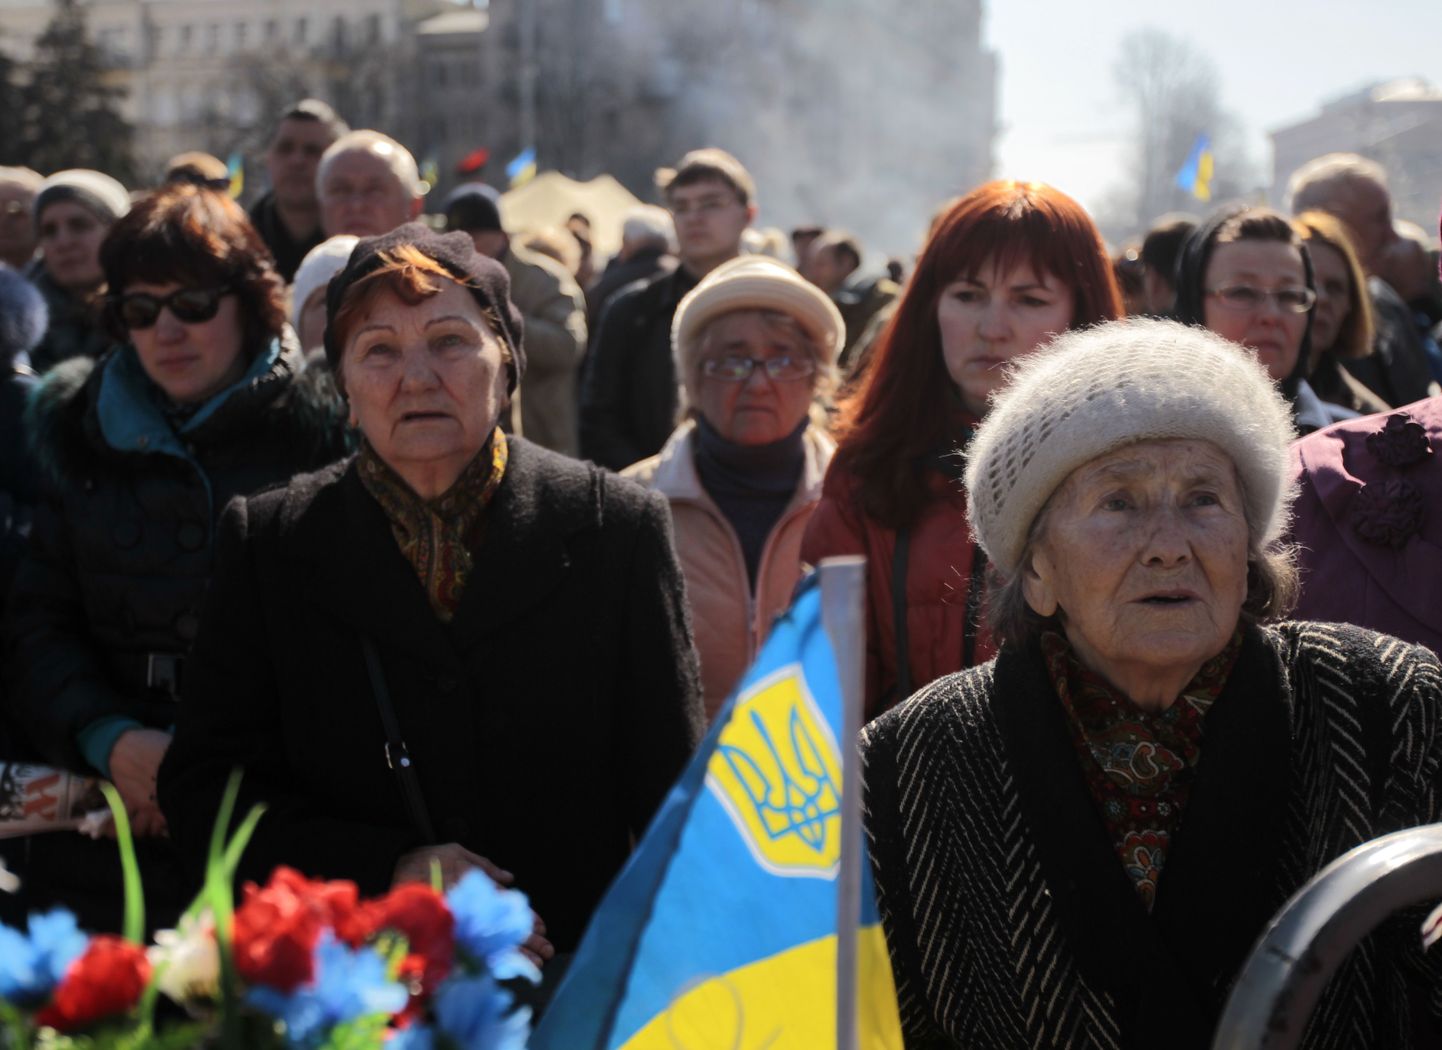 Pühapäeval mälestasid Kiievi elanikud Maidani väljakul taas meeleavaldustes hukkunuid.